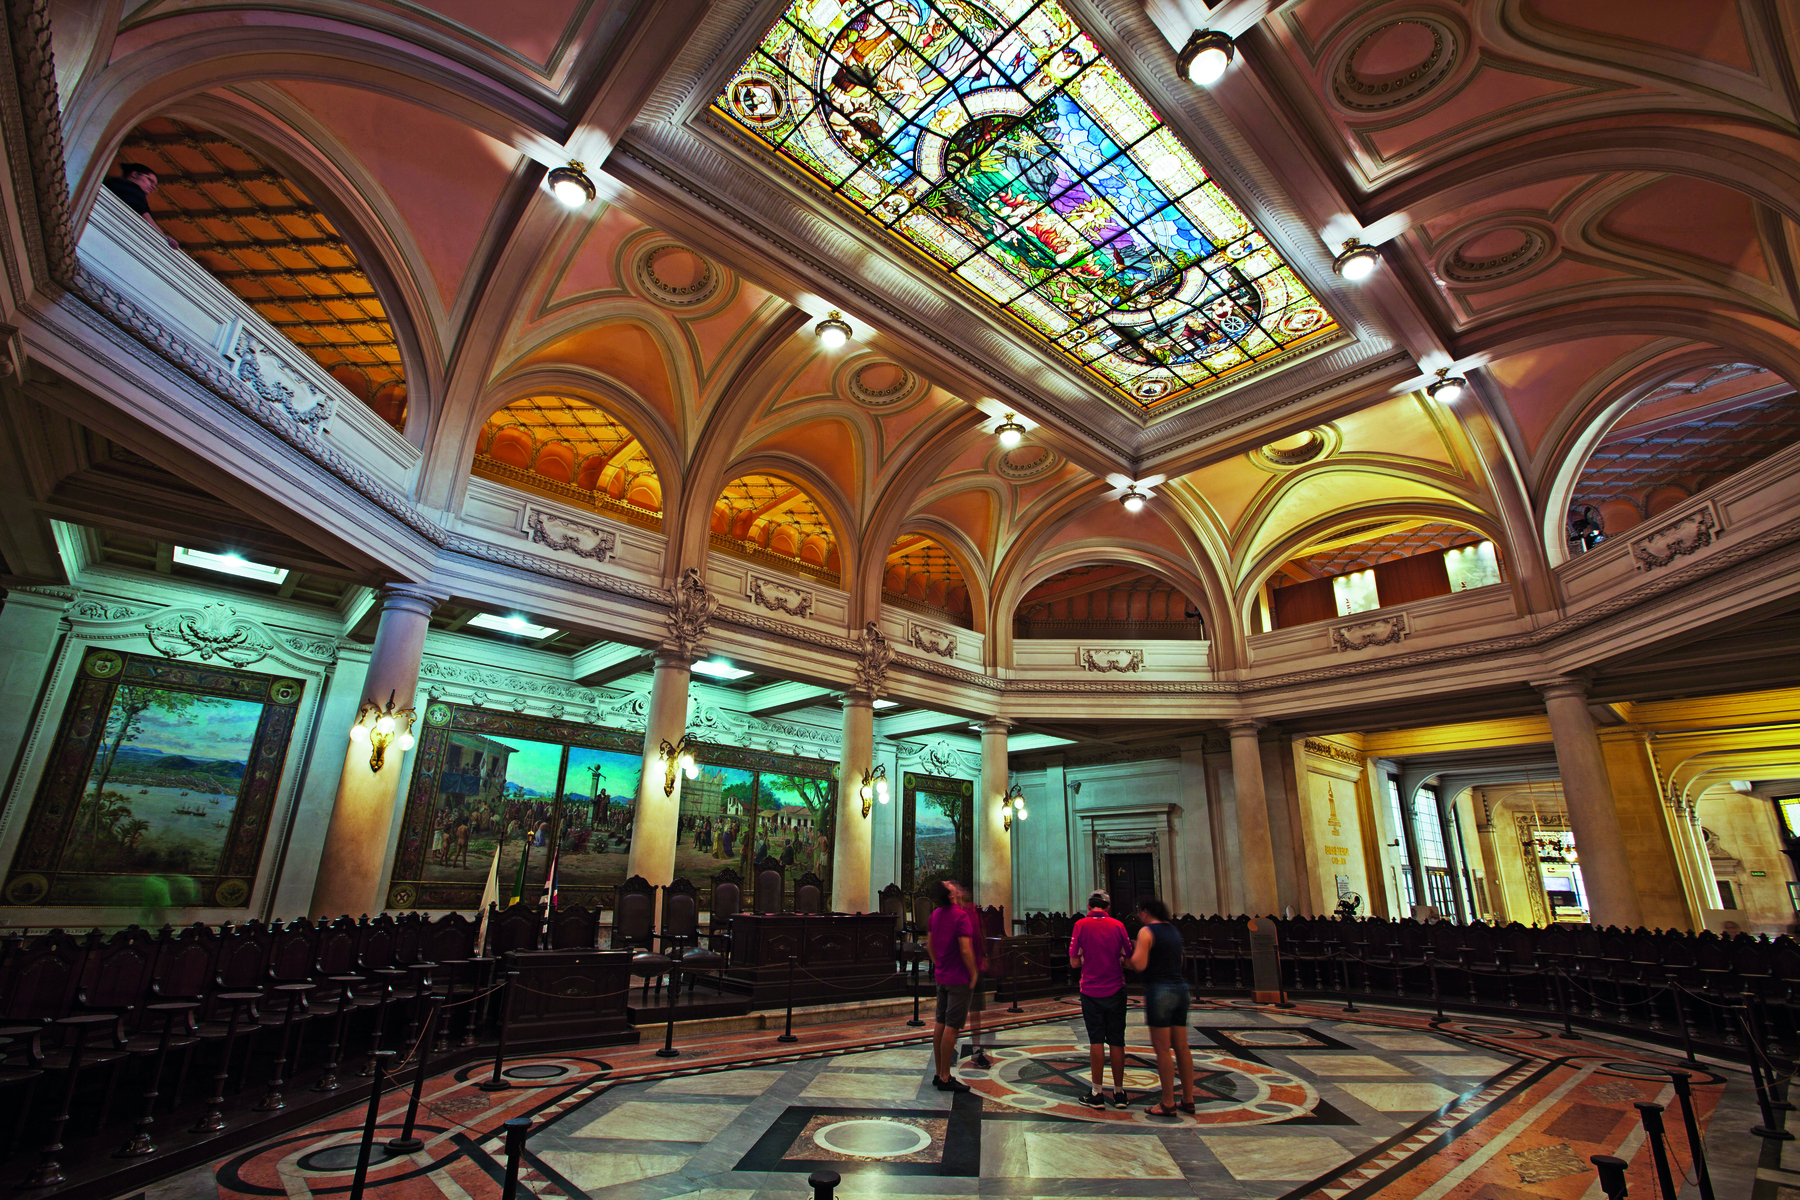 Fotografia. Um amplo salão, com teto em cúpula, contendo vitrais coloridos, e pelas paredes, entre colunas que terminam em arcos, pinturas e quadros expostos. No meio do salão, pessoas em pé agrupadas.